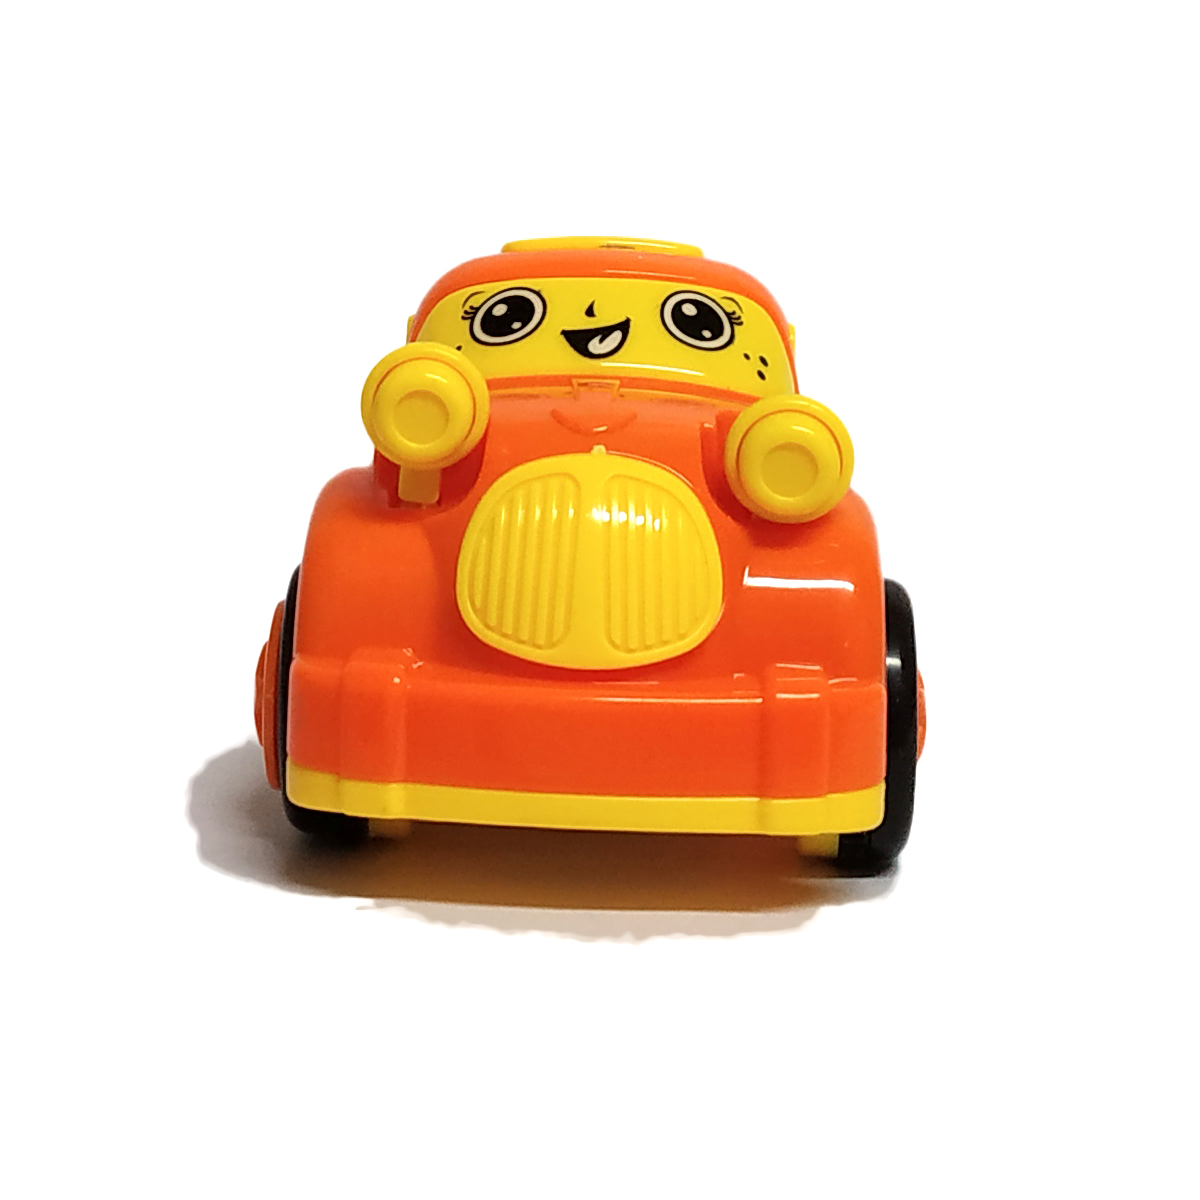 Bittle car - Orange